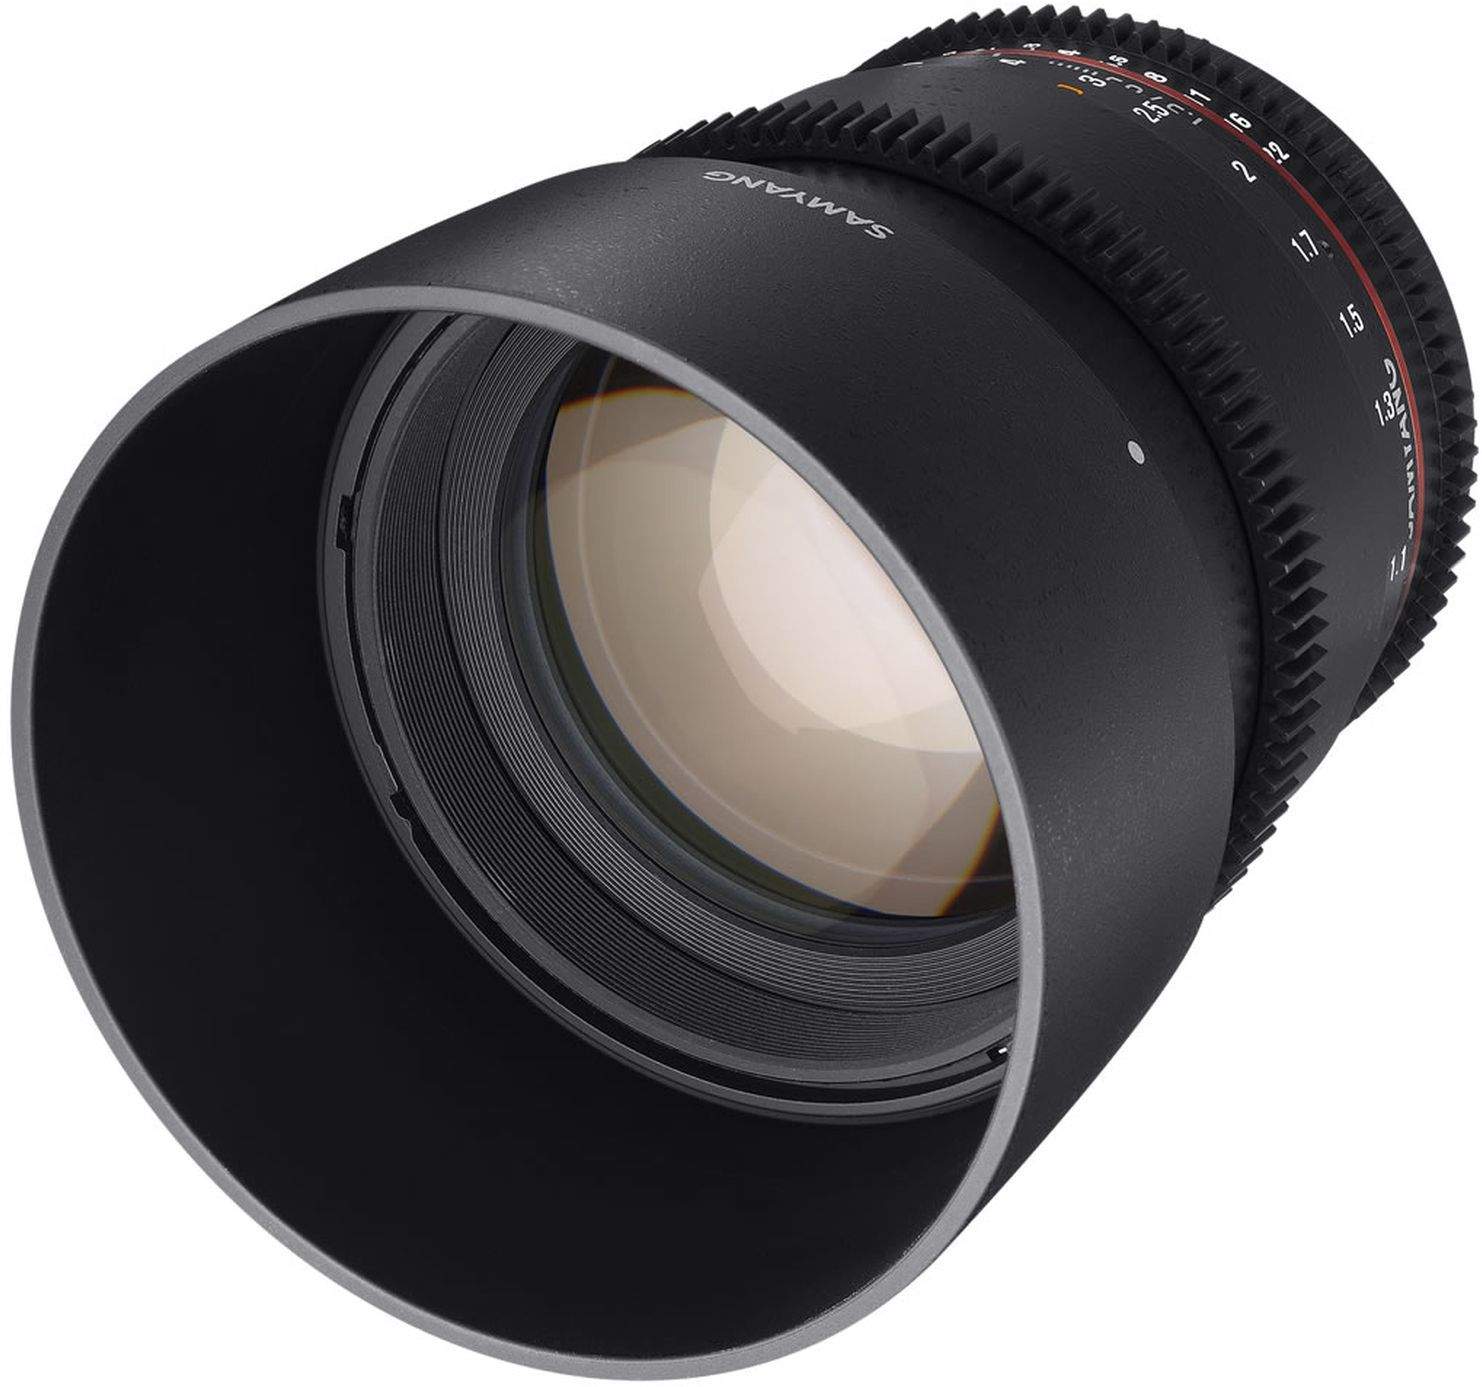 Samyang 85mm T1.5 UMC II Nikon Full Frame VDSLR/Cine Lens